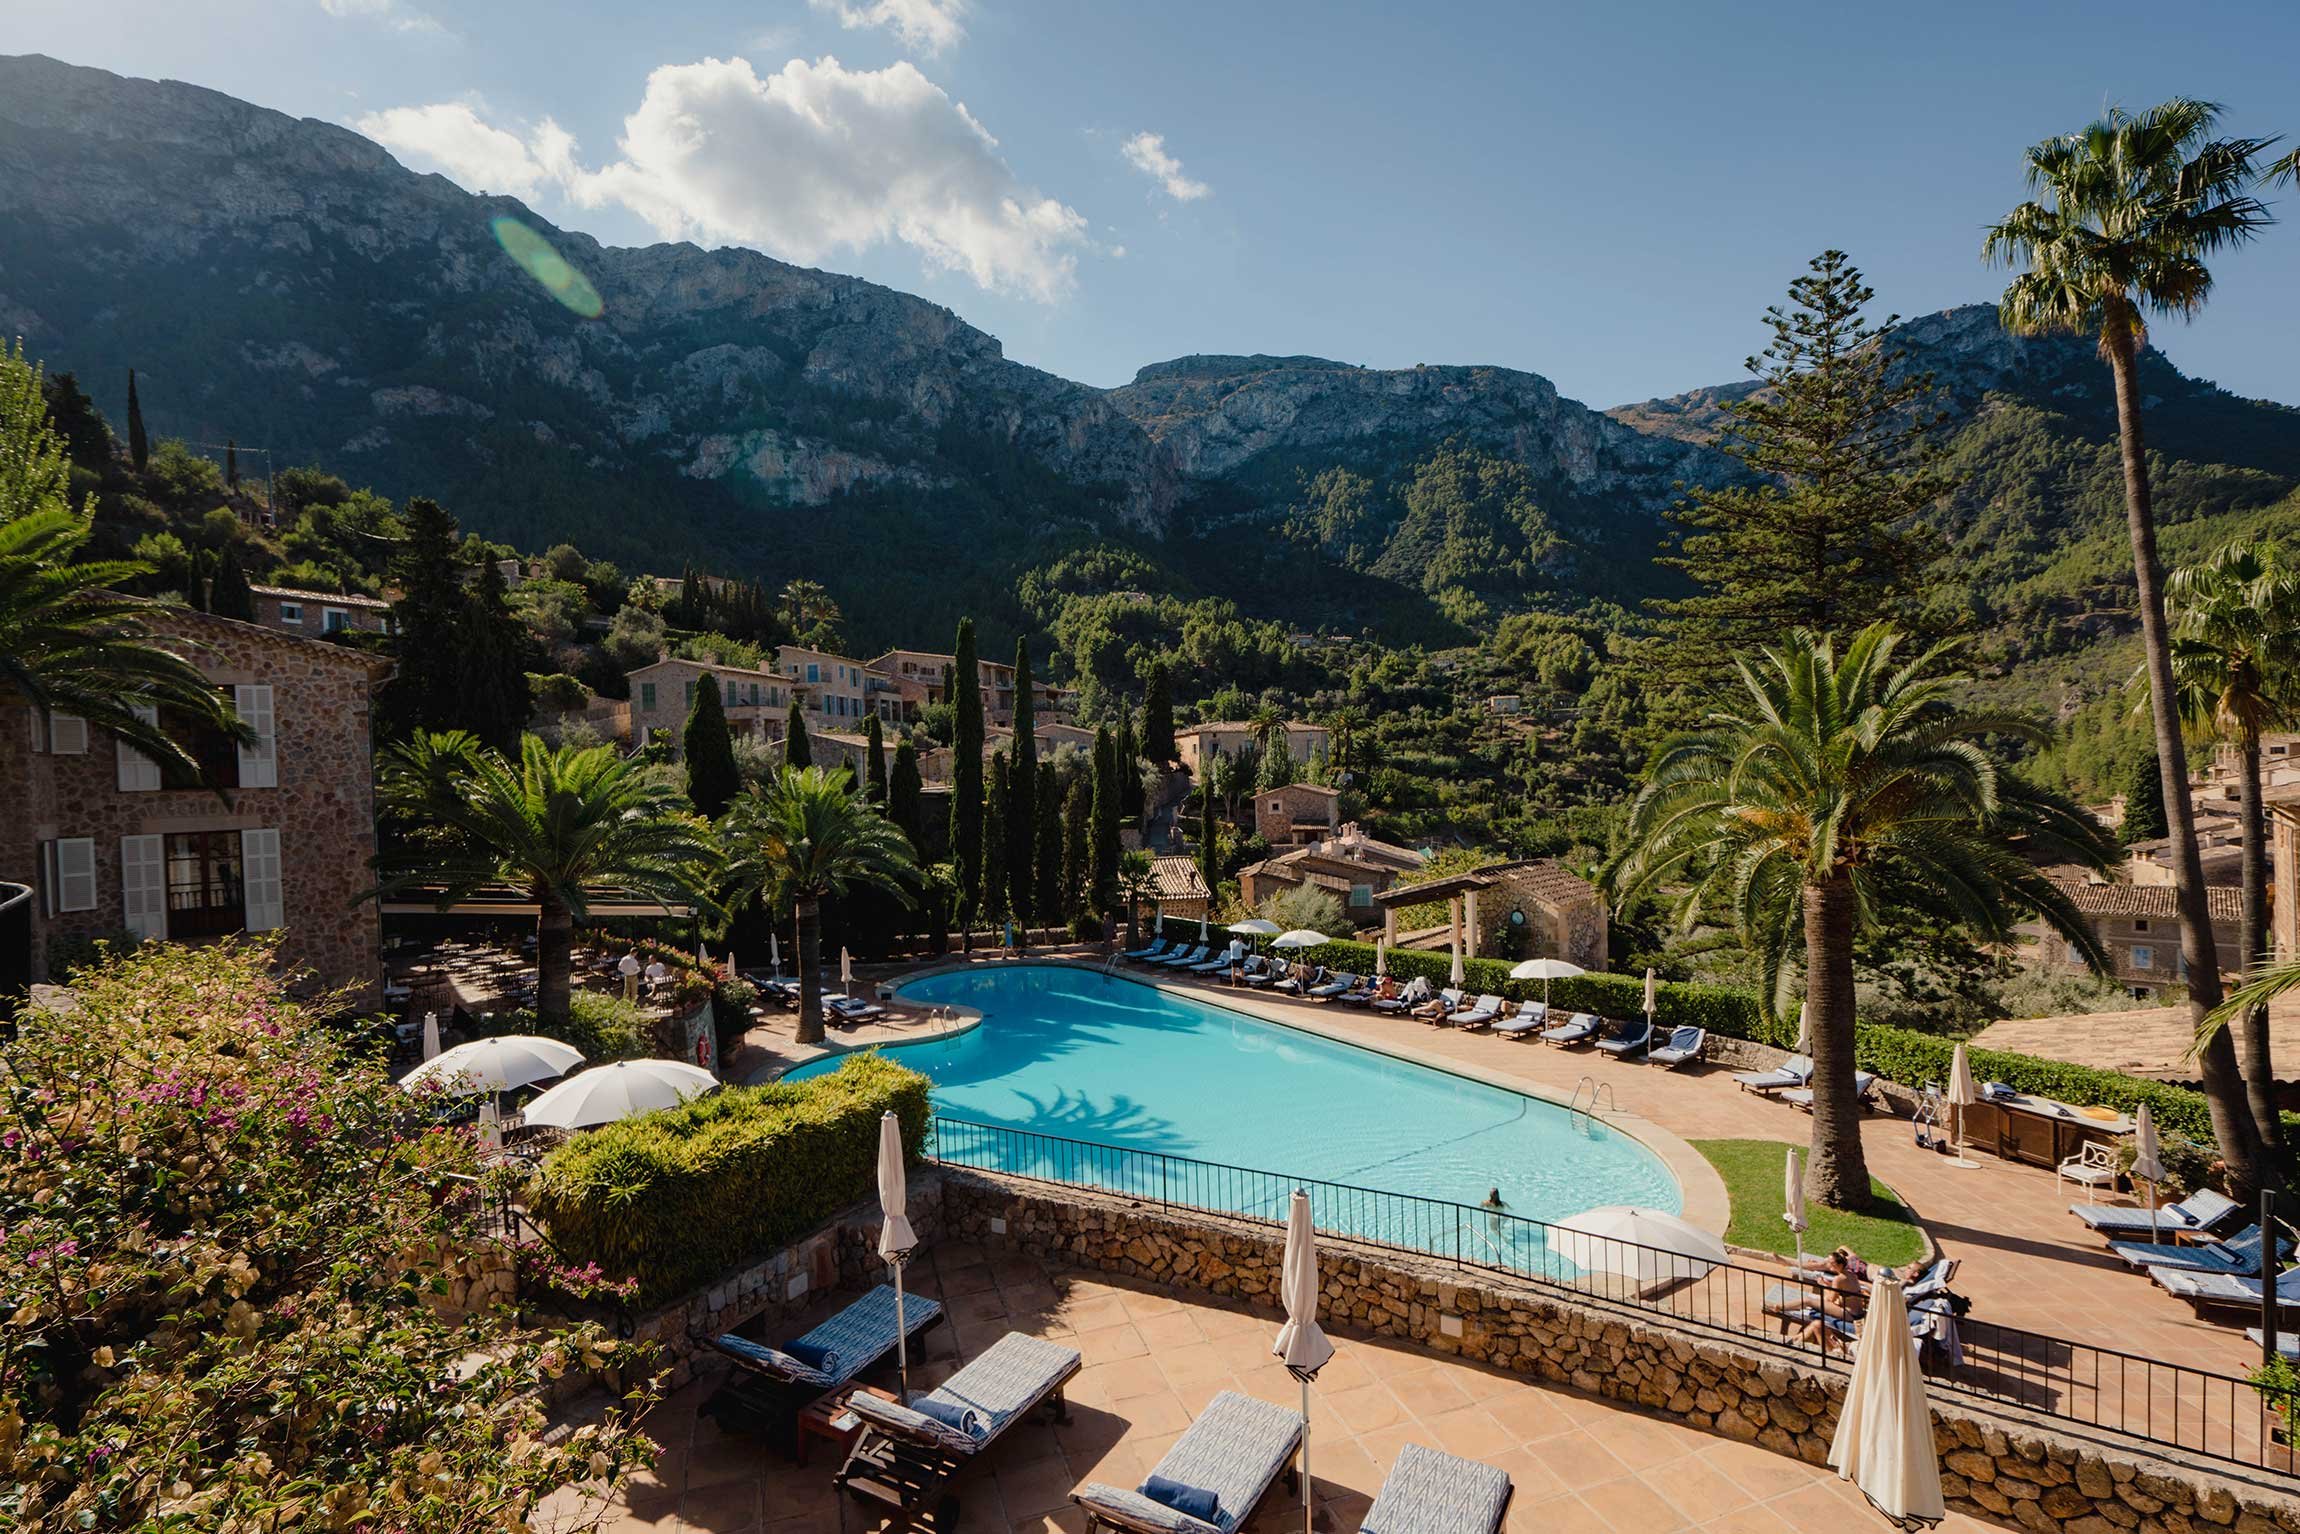 Belmond La Residencia, Mallorca, Luxury Hotels in Spain